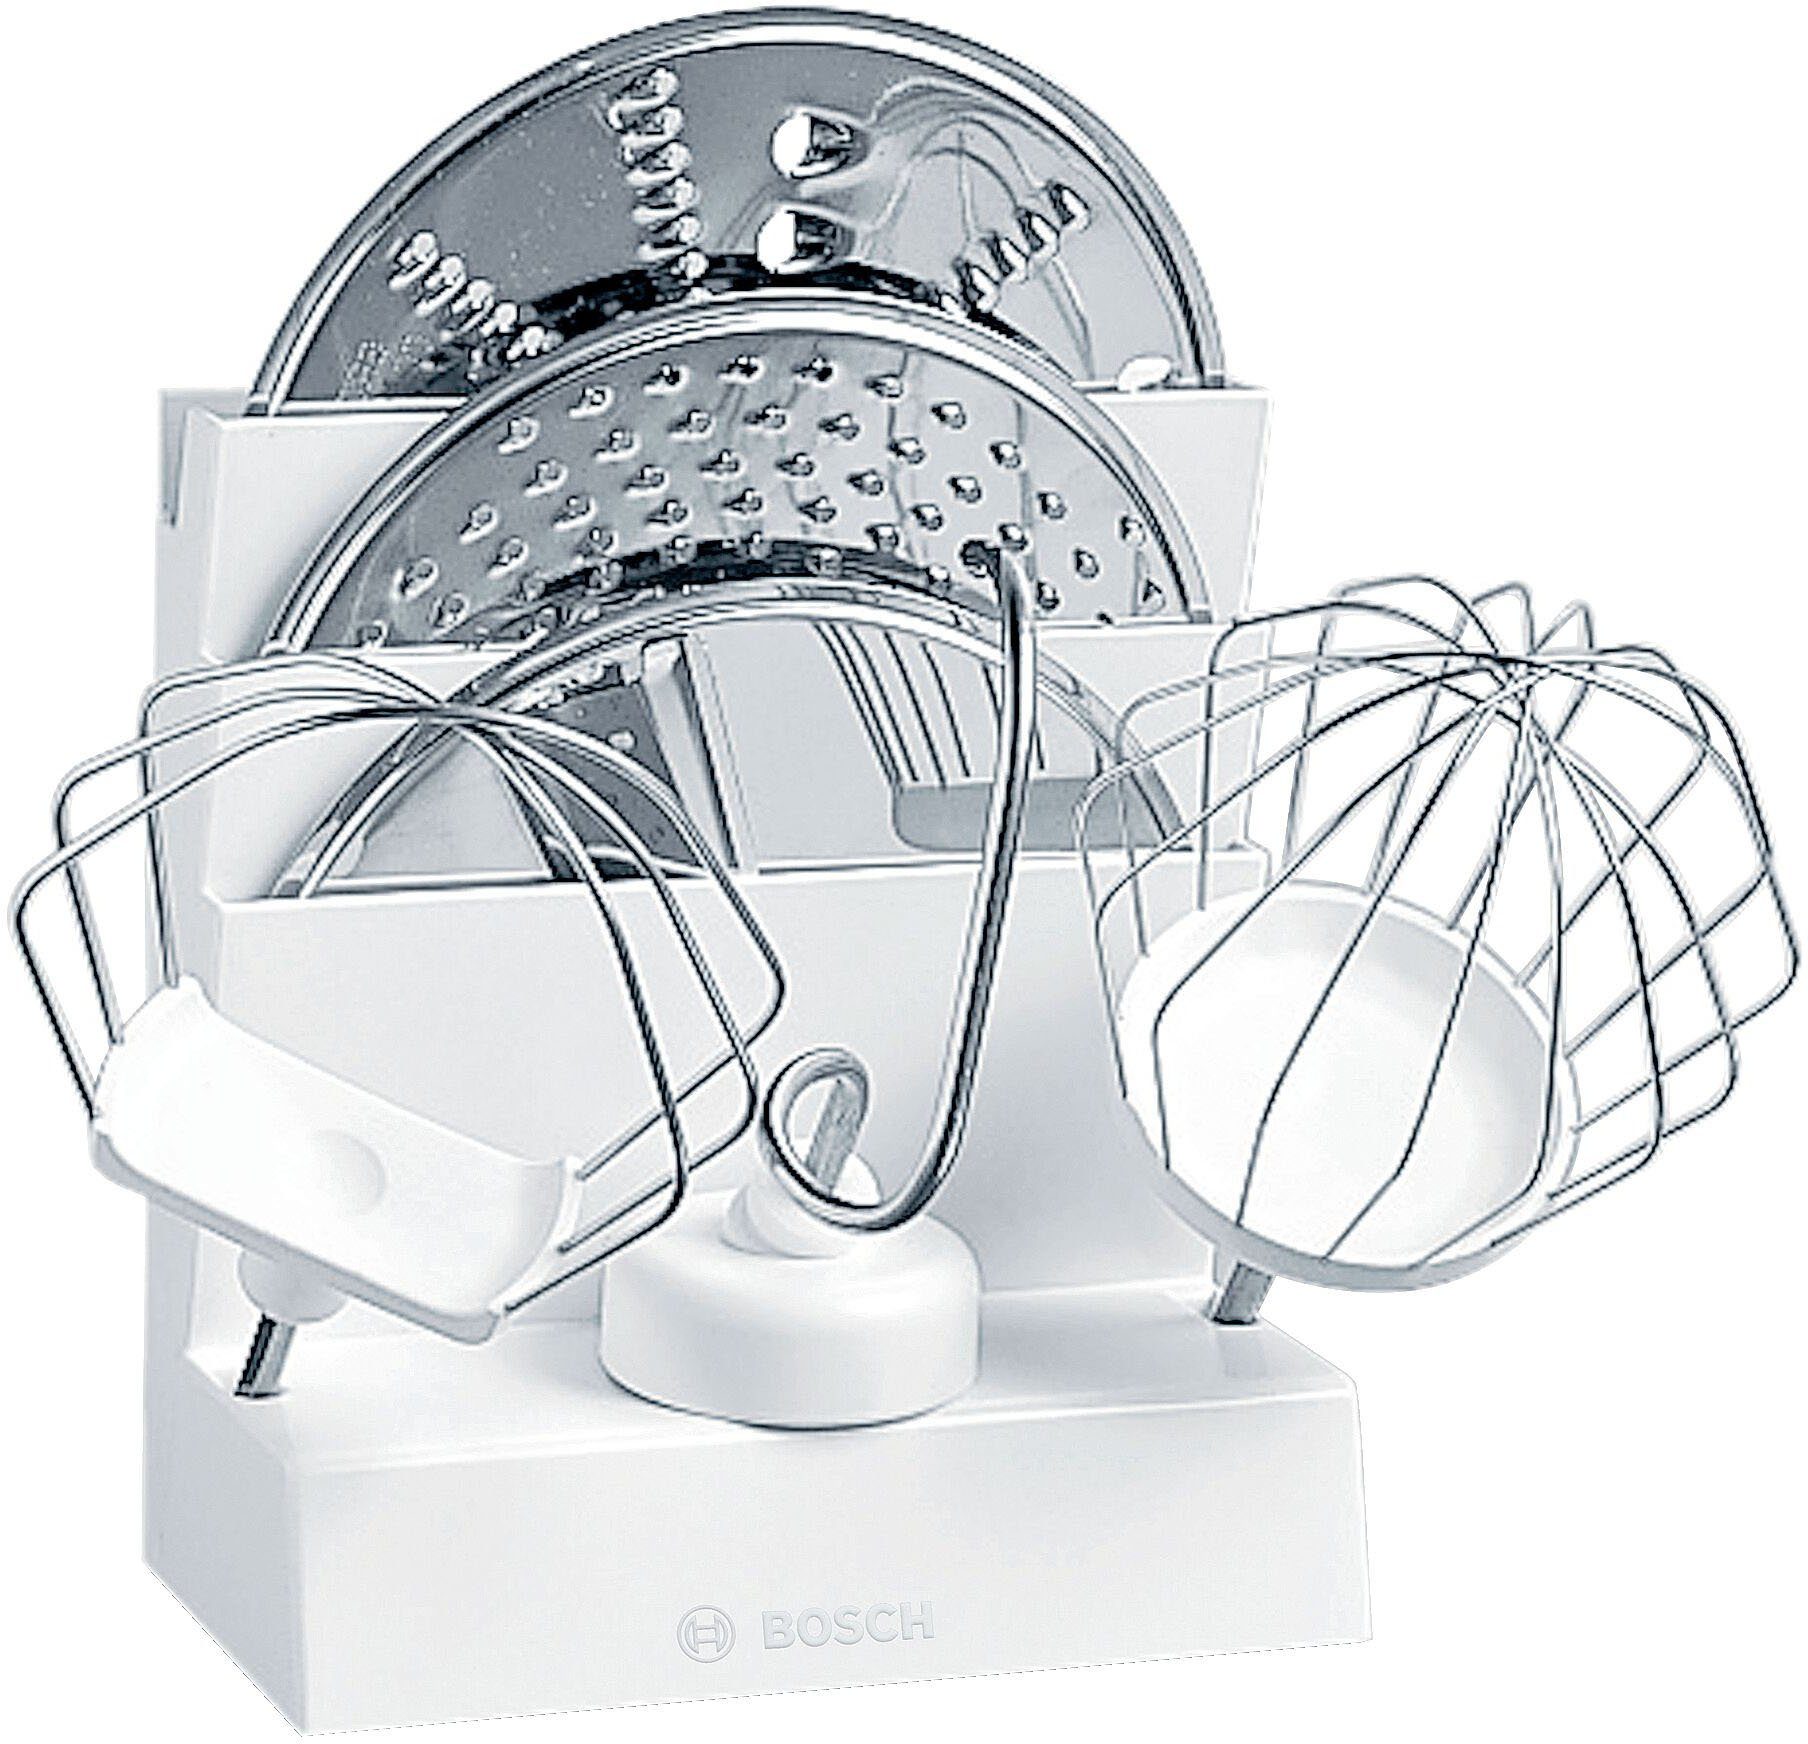 BOSCH Zubehör Reihe Küchenmaschinen Bosch MUM4 für der alle Zubehöraufbewahrungsständer,